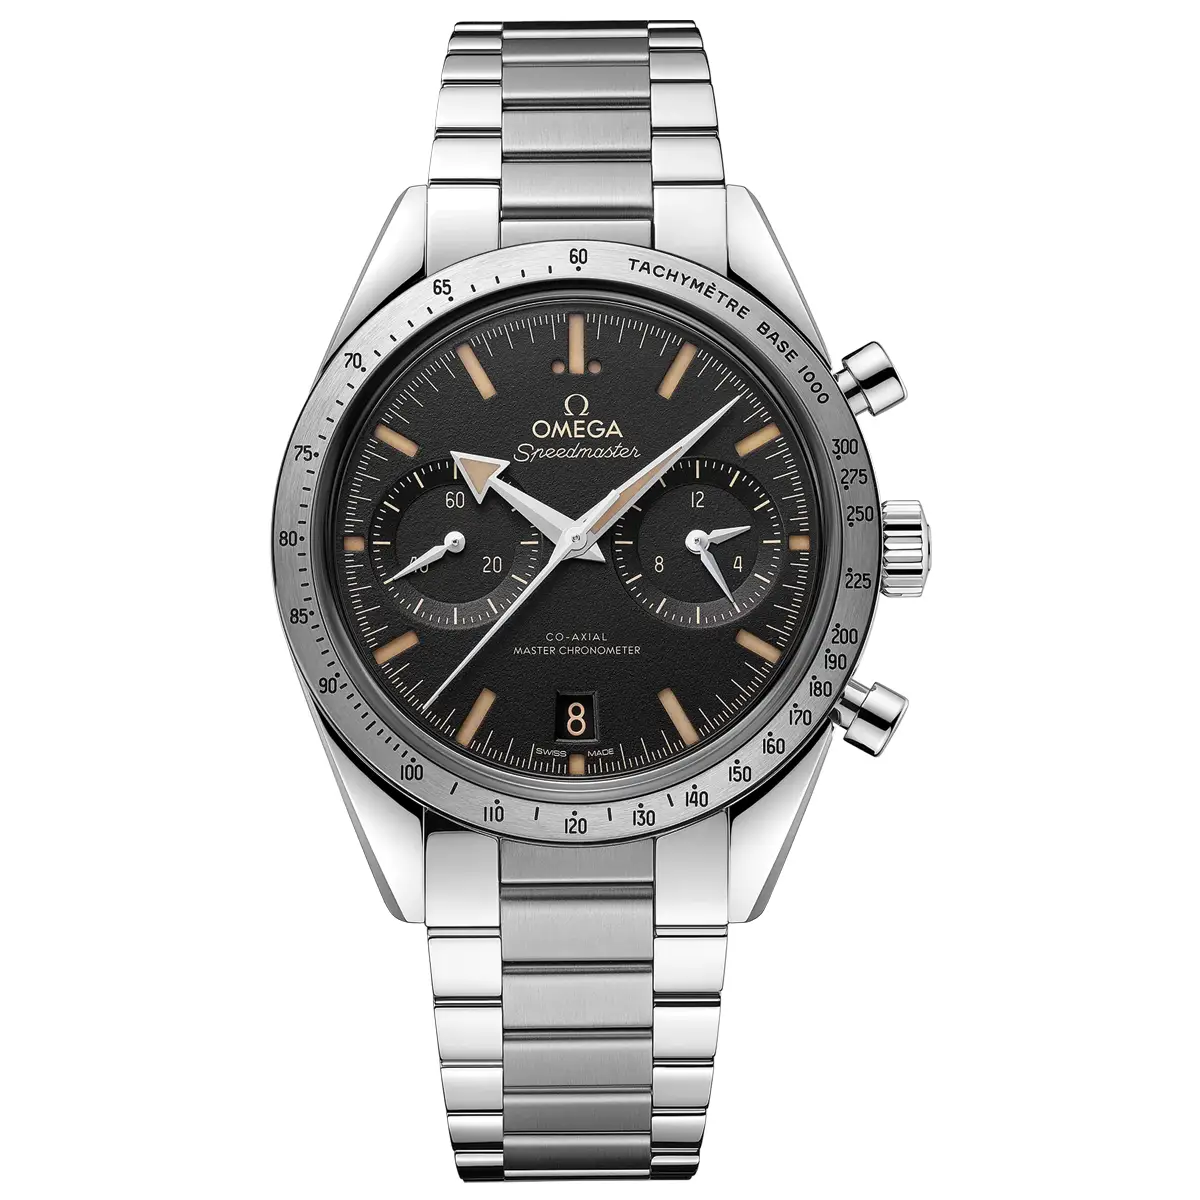 Đồng hồ Omega Speedmaster ’57 Chronometer Chronograph 332.10.41.51.01.001 mặt màu đen. Dây đeo bằng thép. Thân vỏ bằng thép.